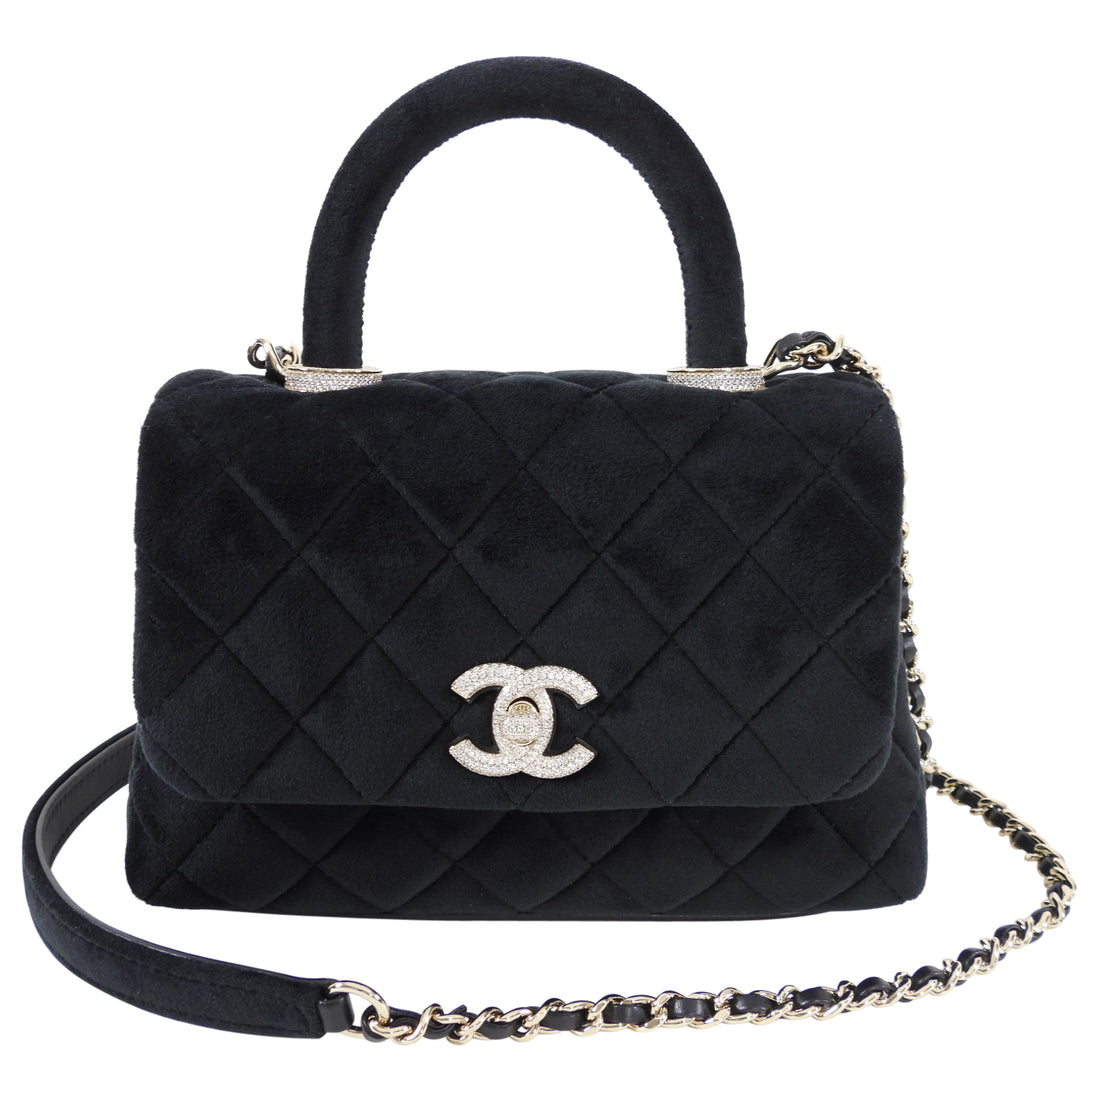 Preowned Chanel Velvet Chain Handbag In Black  ModeSens  Bags Chanel bag  Handbag